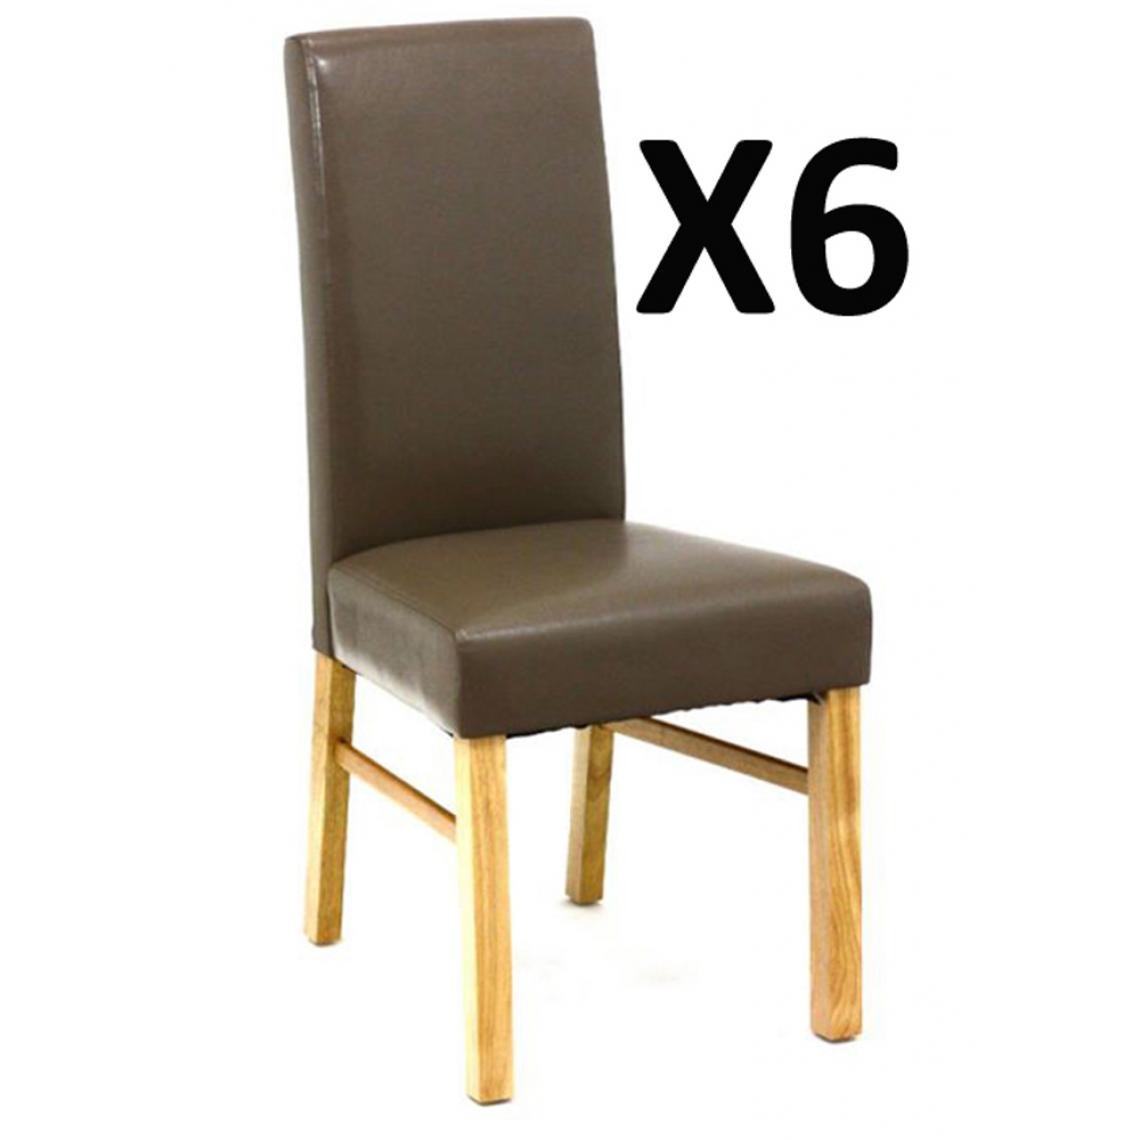 Pegane - Lot de 6 chaises Lucas, coloris Taupe, L46 x P48 x H100 cm - Chaises